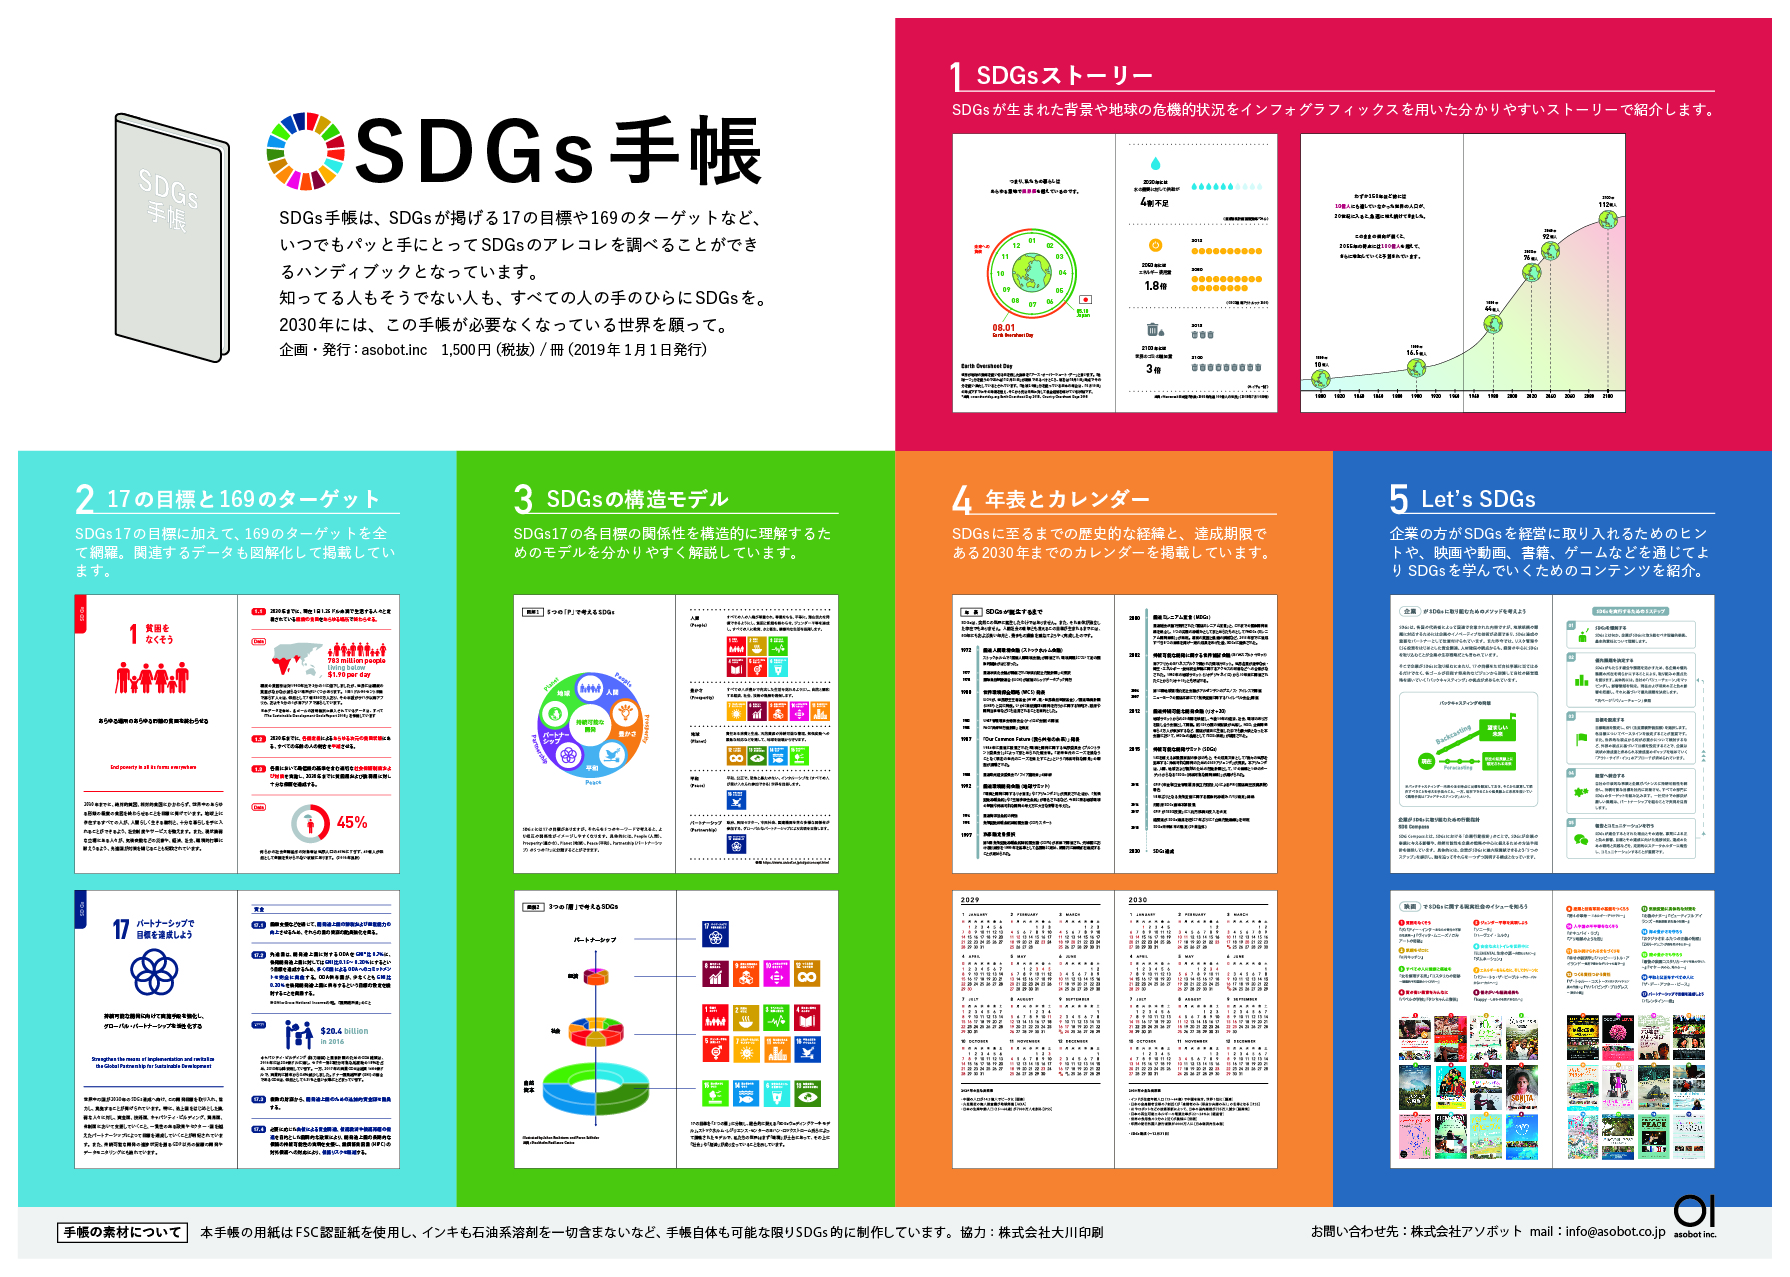 「SDGs手帳」販売開始のお知らせ